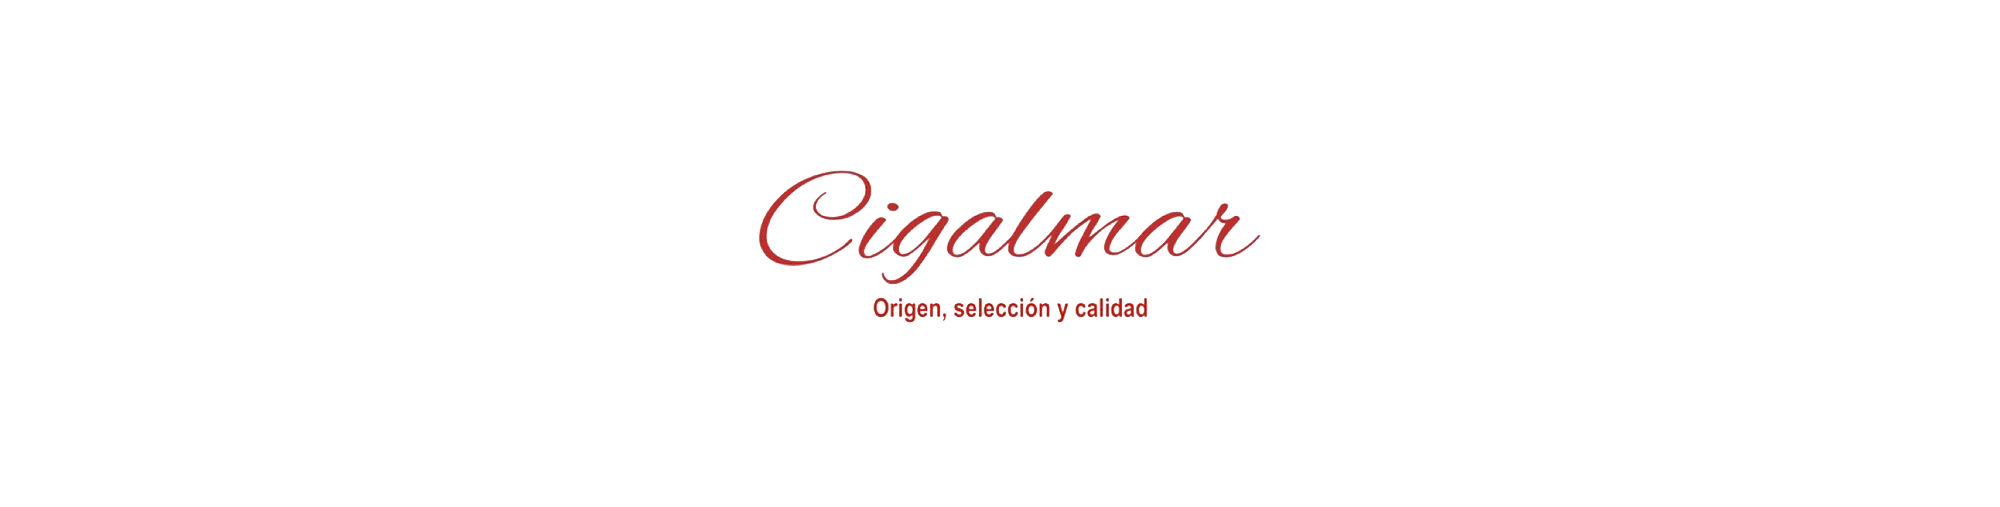 Animación del logotipo pasado de la empresa de A Coruña y el nuevo diseño de marca realizado